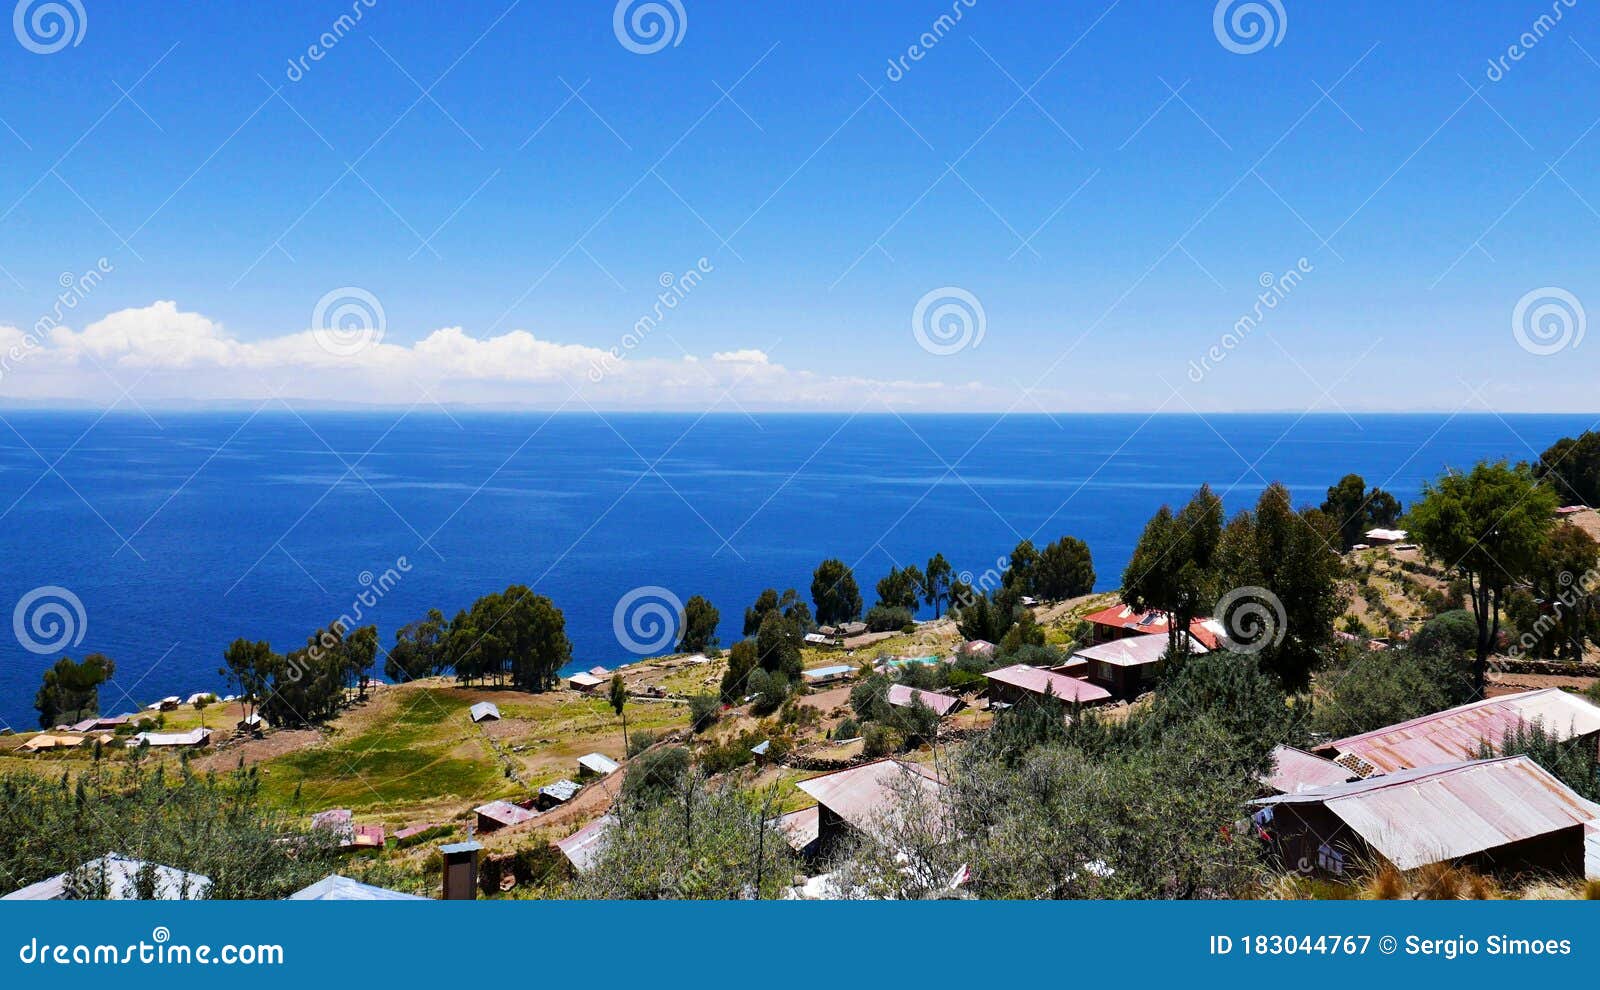 taquile island, lake titicaca - peru